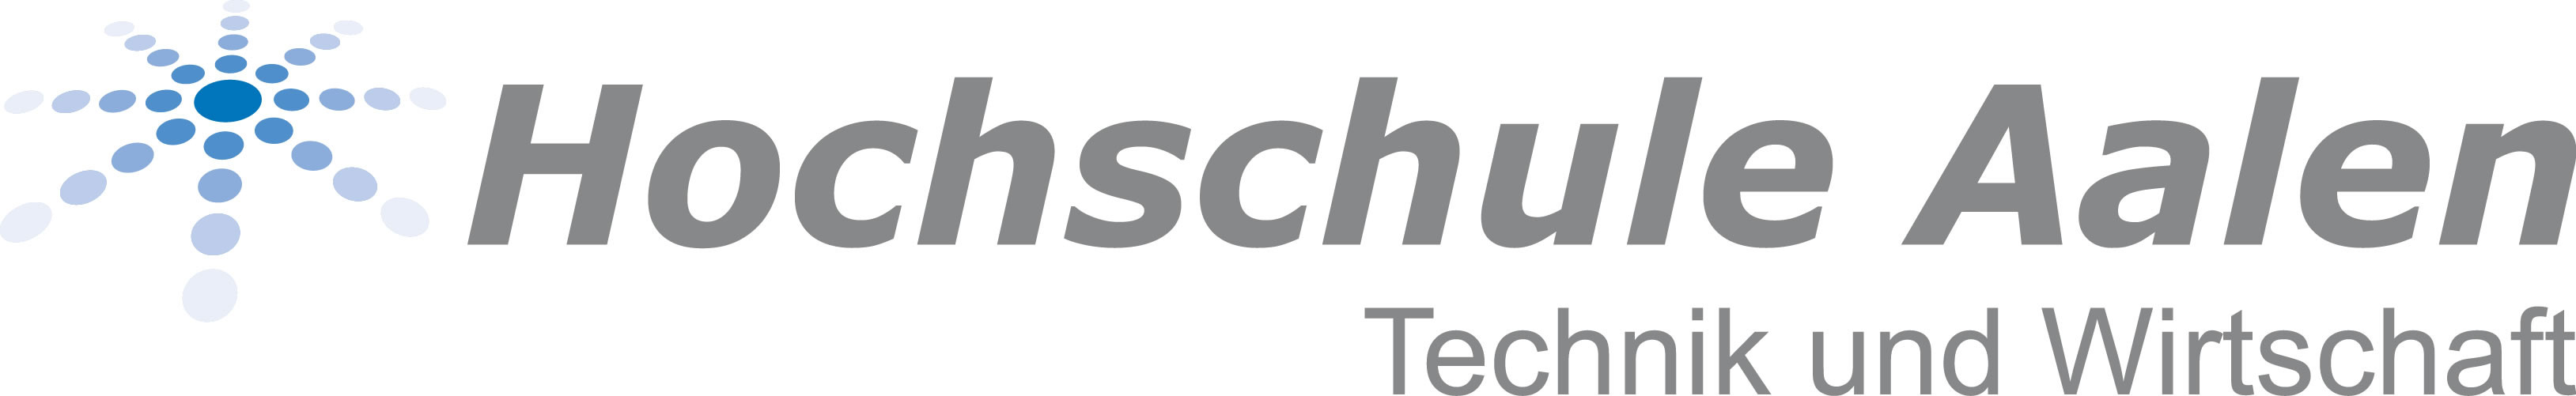 Logo Hochschule Aalen - Technik und Wirtschaft